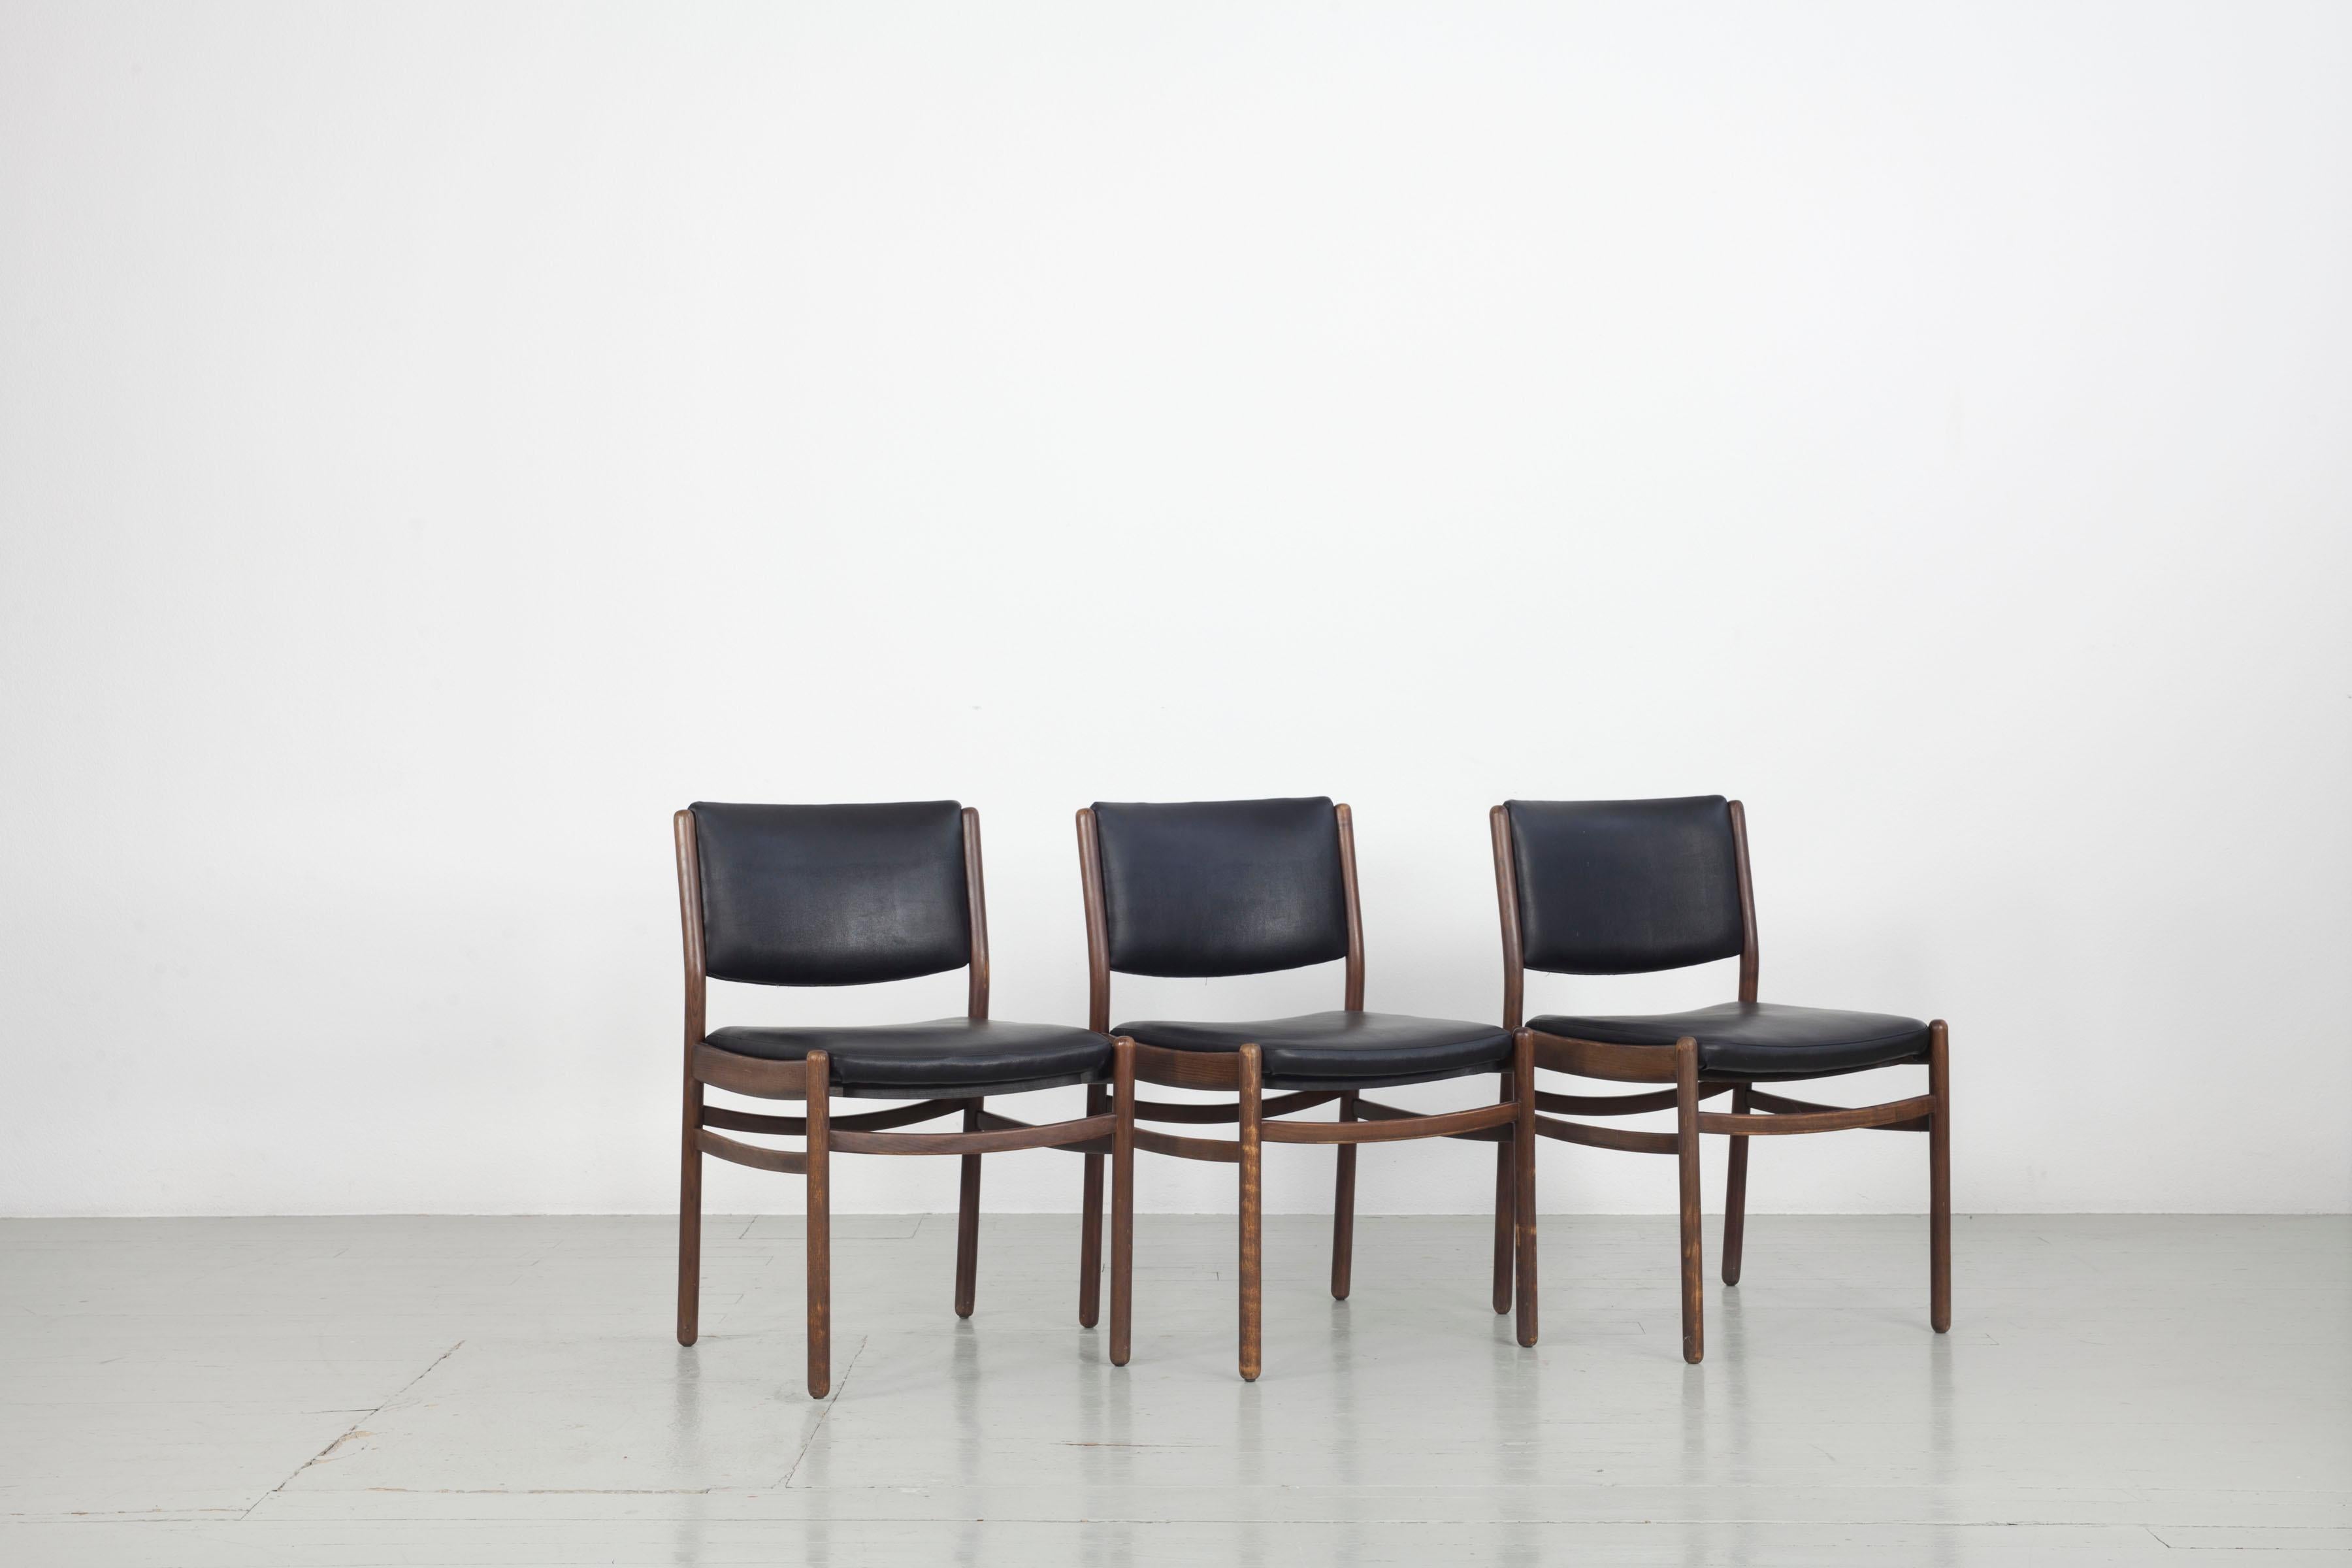 Dieses Set aus drei Holzstühlen wurde in den 1960er Jahren in Italien hergestellt. Der Sitz und die Rückenlehne sind mit schwarzem Kunstleder bezogen und in sehr gutem Zustand. Das Holz ist leicht verblichen und hat Gebrauchsspuren, aber der Sockel